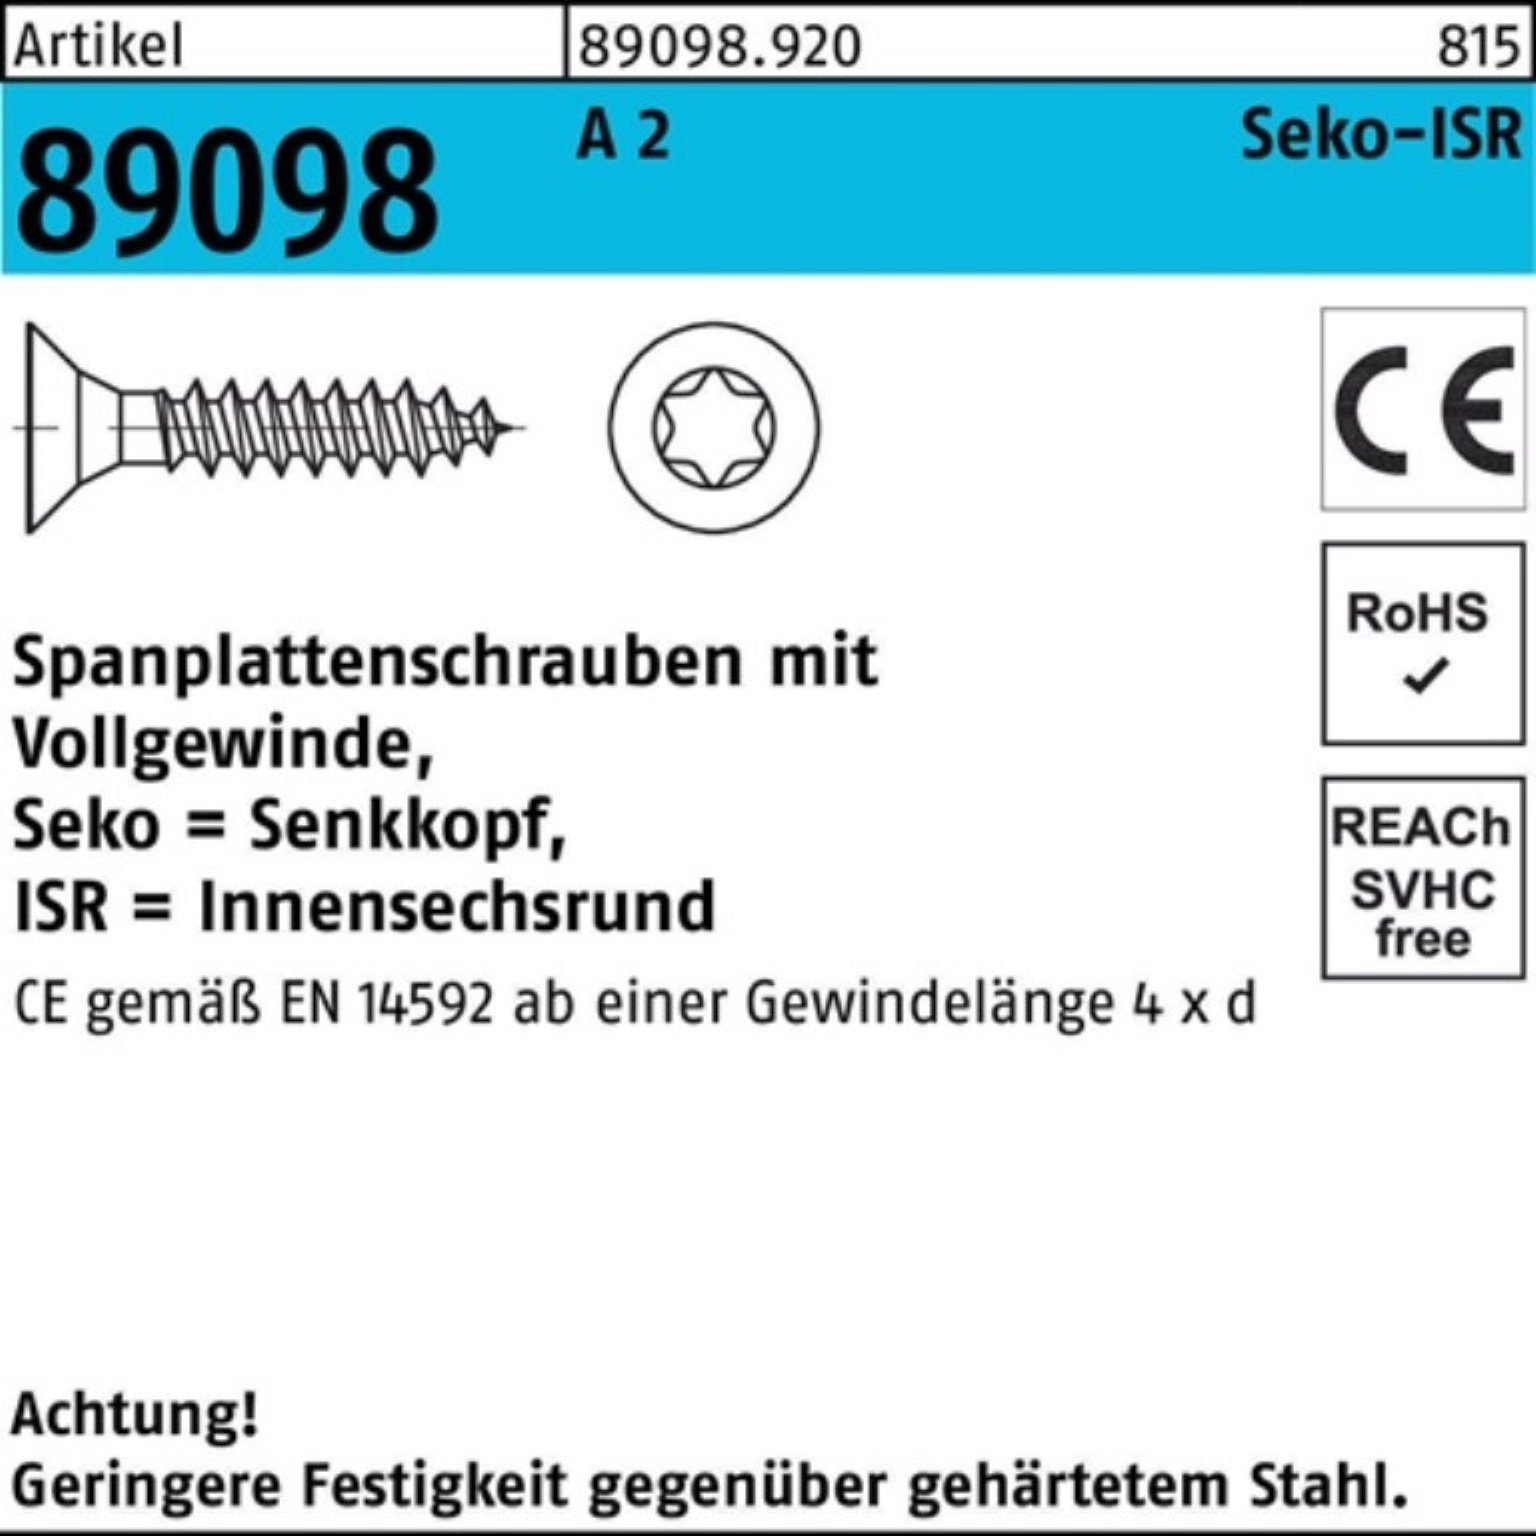 SEKO Spanplattenschraube R 2 Pack 20-T25 5x ISR VG Reyher Spanplattenschraube S 89098 200er 200 A